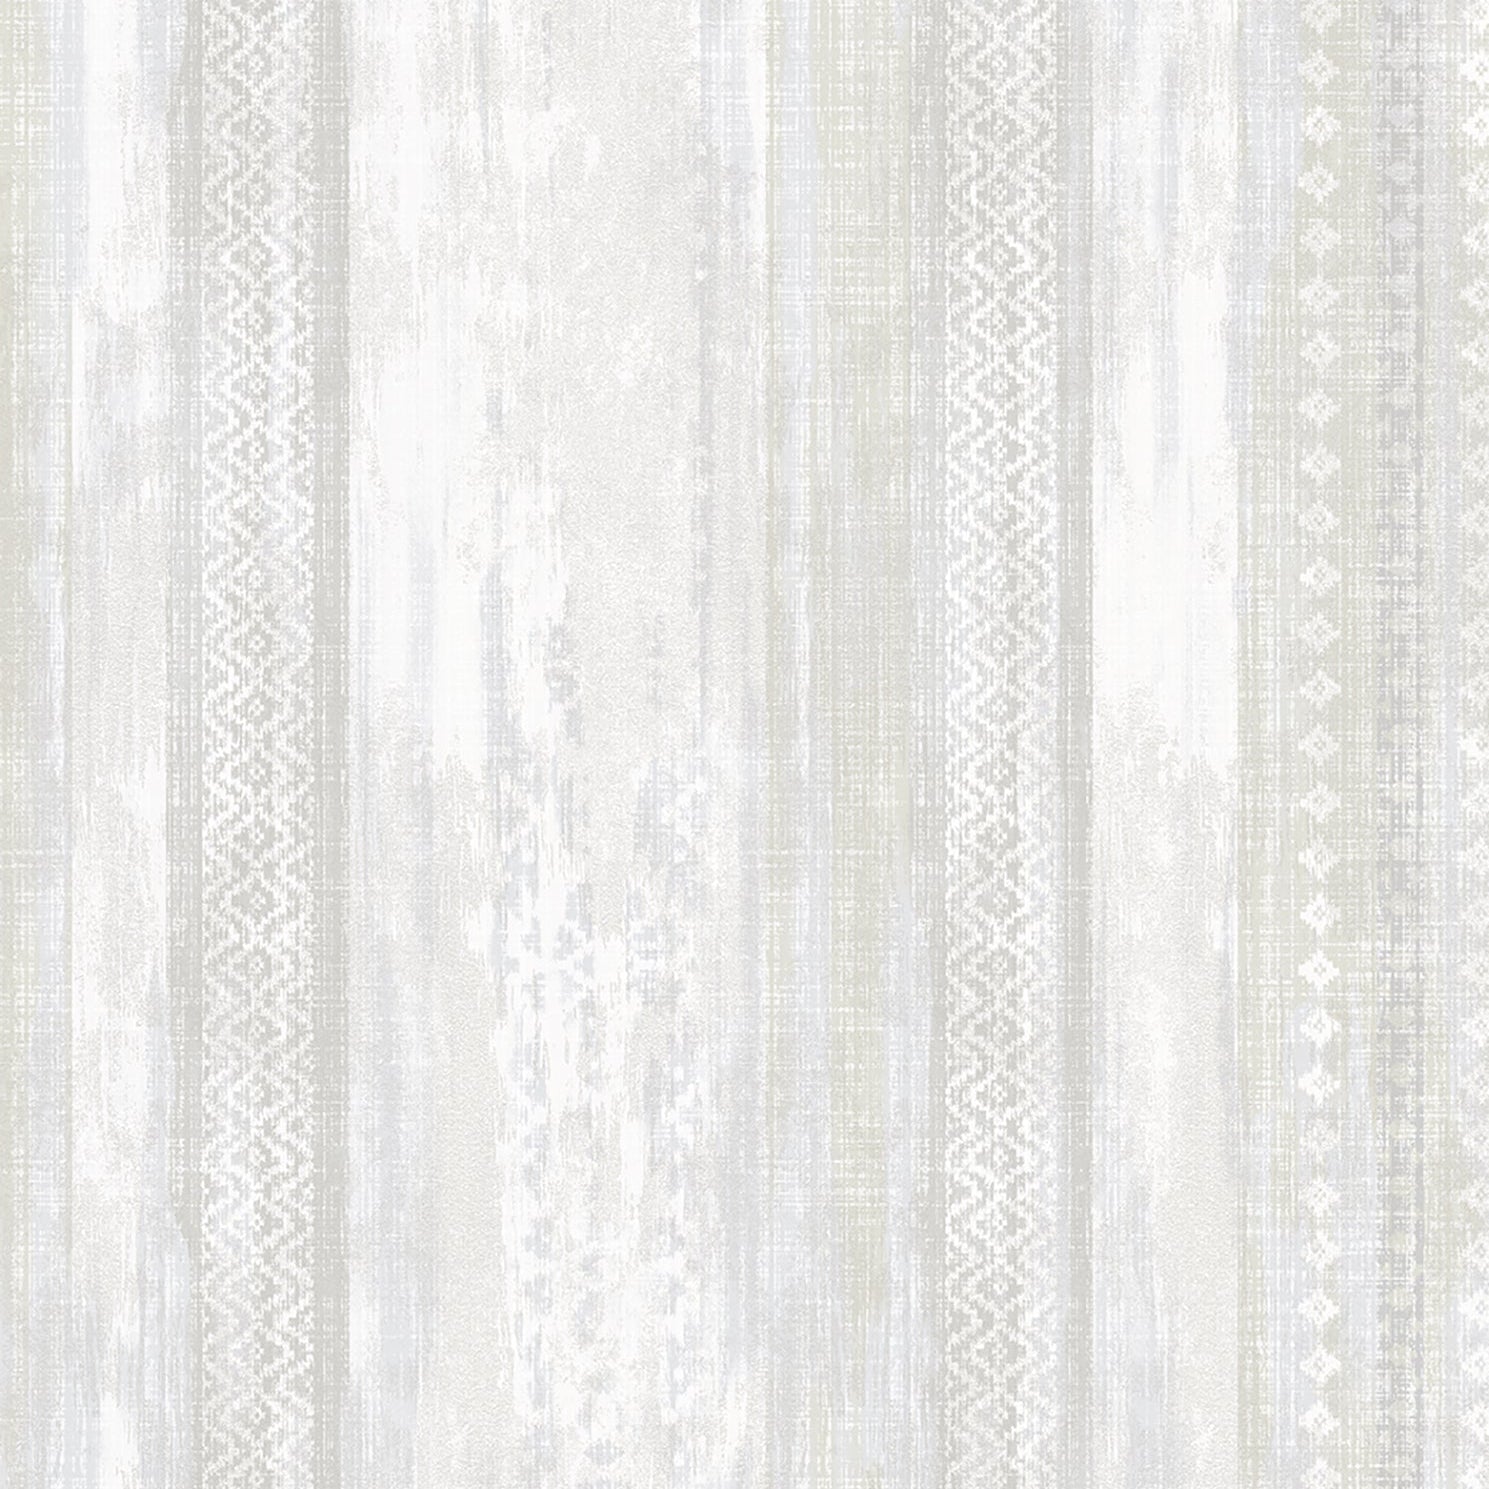 Save 2810-SH01081 Tradition Blair Ikat Stripe by Advantage